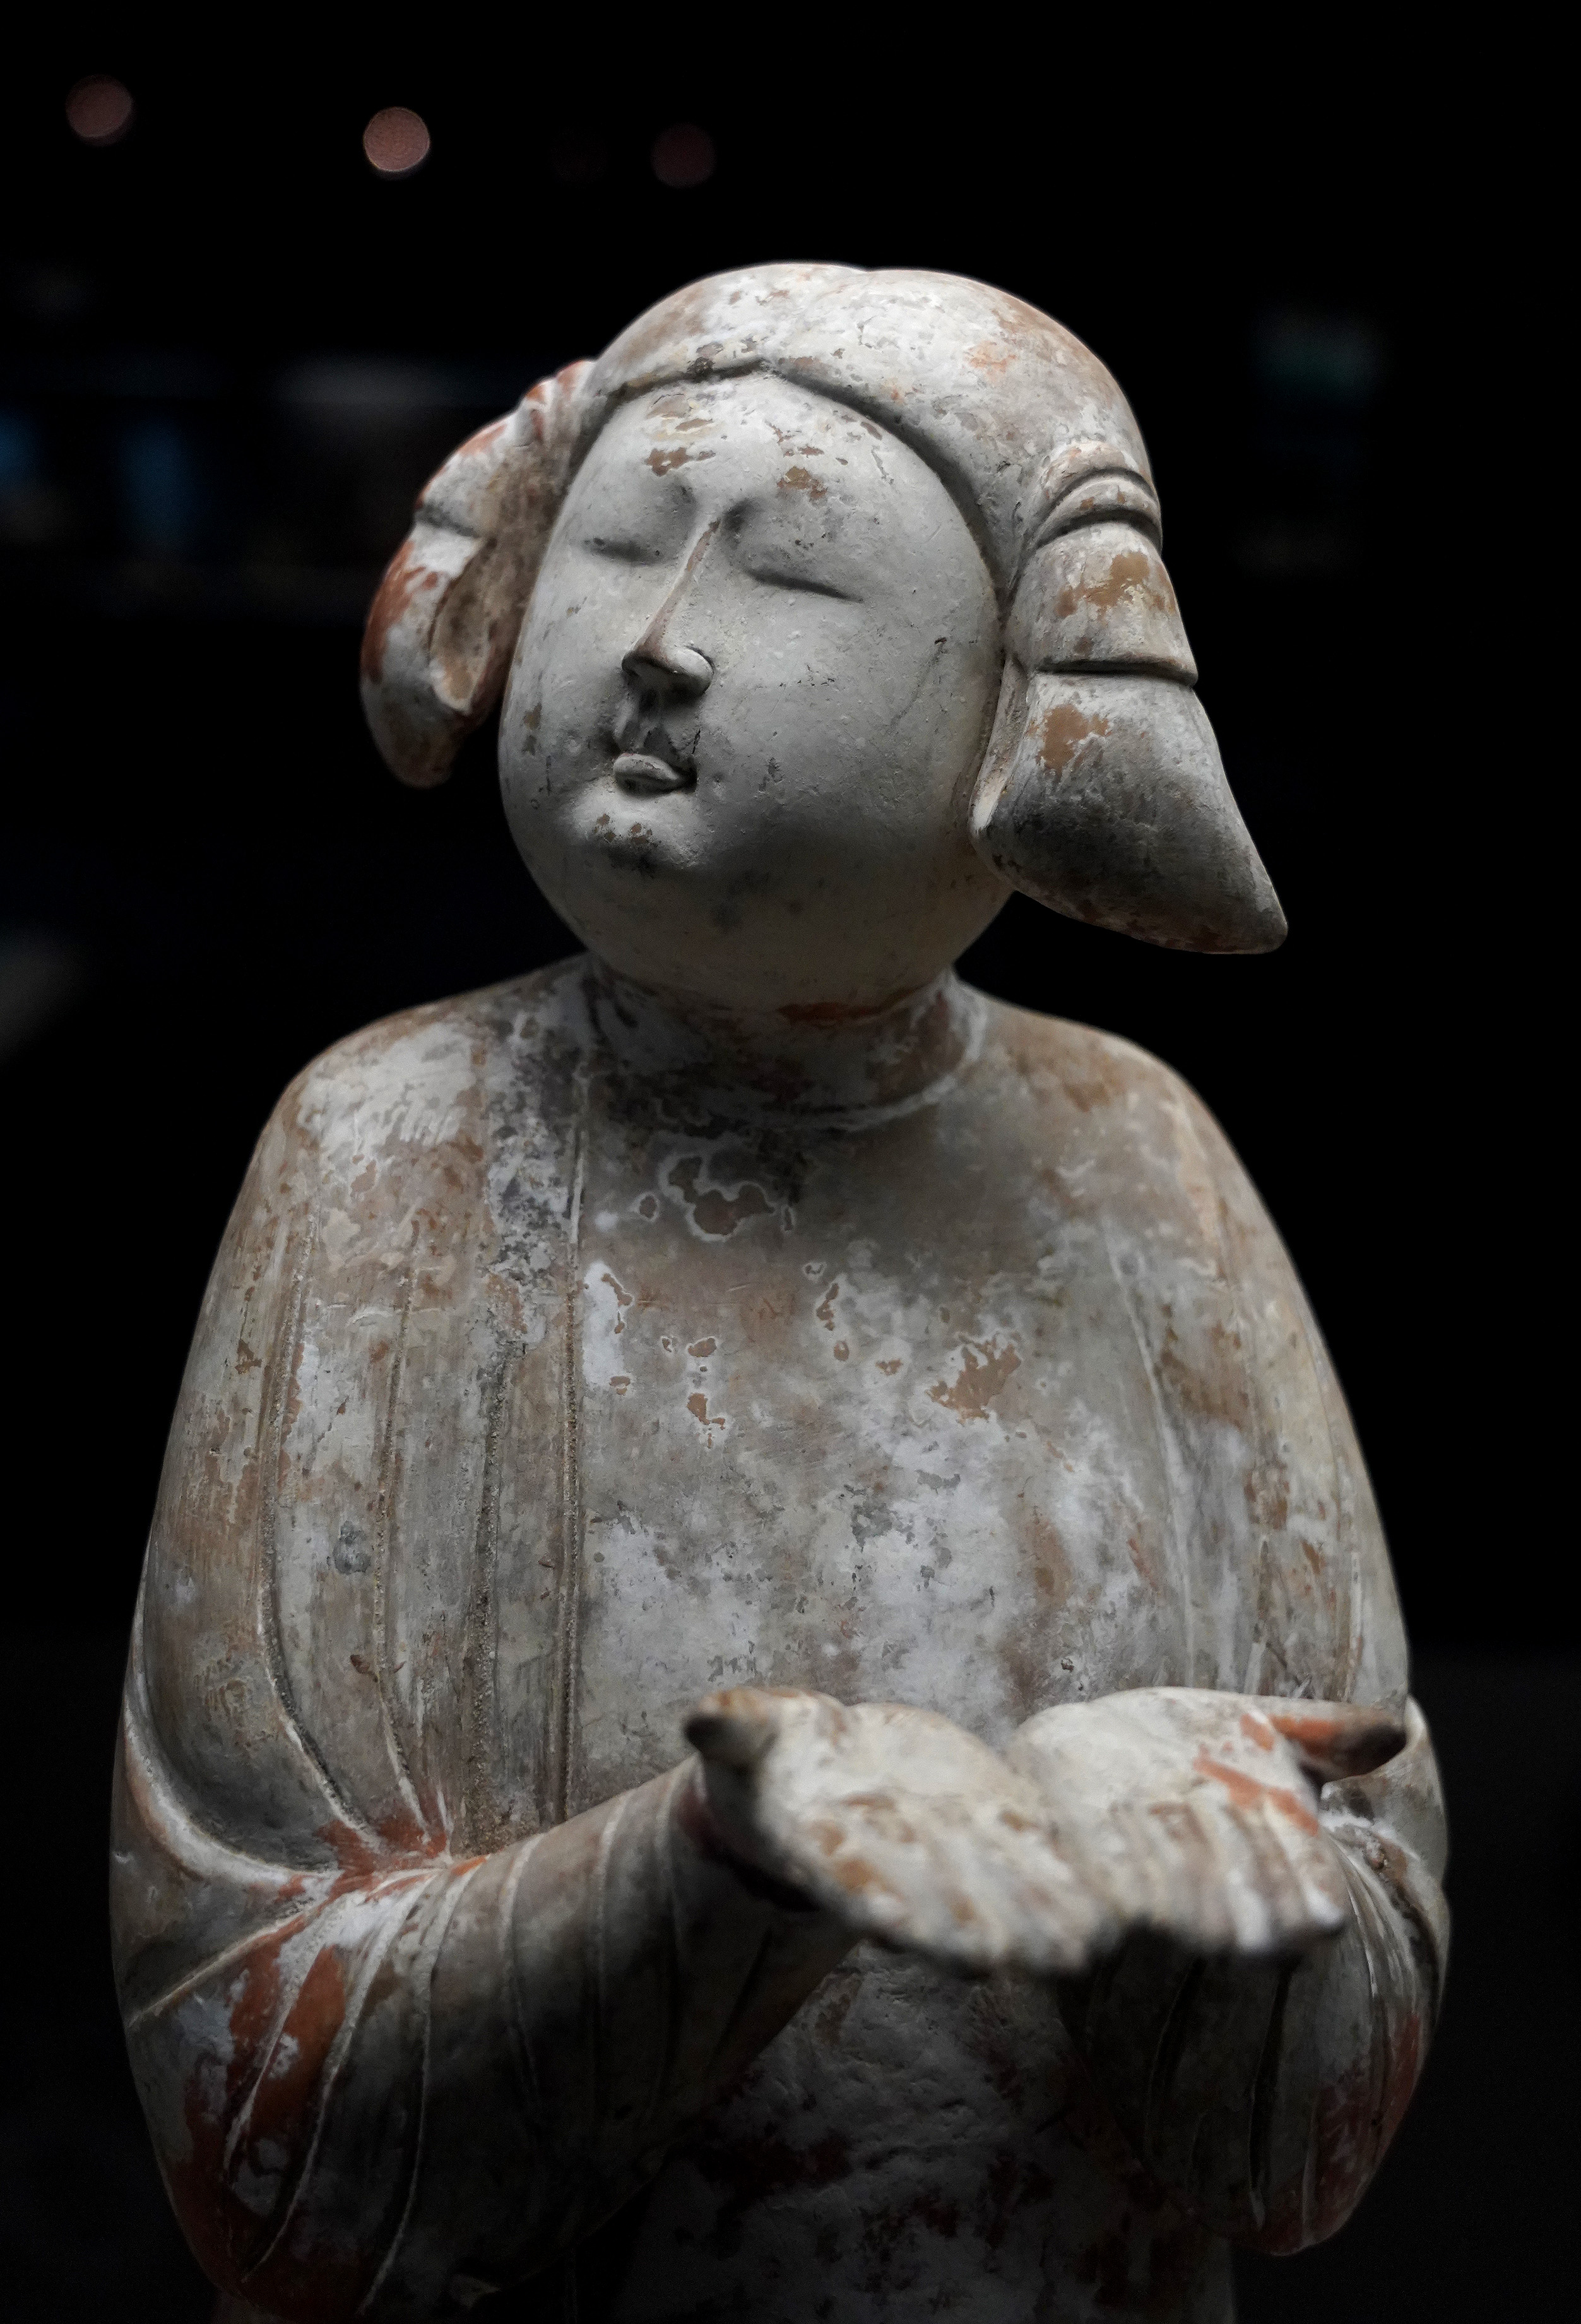 個性的なヘアスタイルの唐代女性俑を多数所蔵 西安博物院を訪ねて 写真8枚 国際ニュース Afpbb News